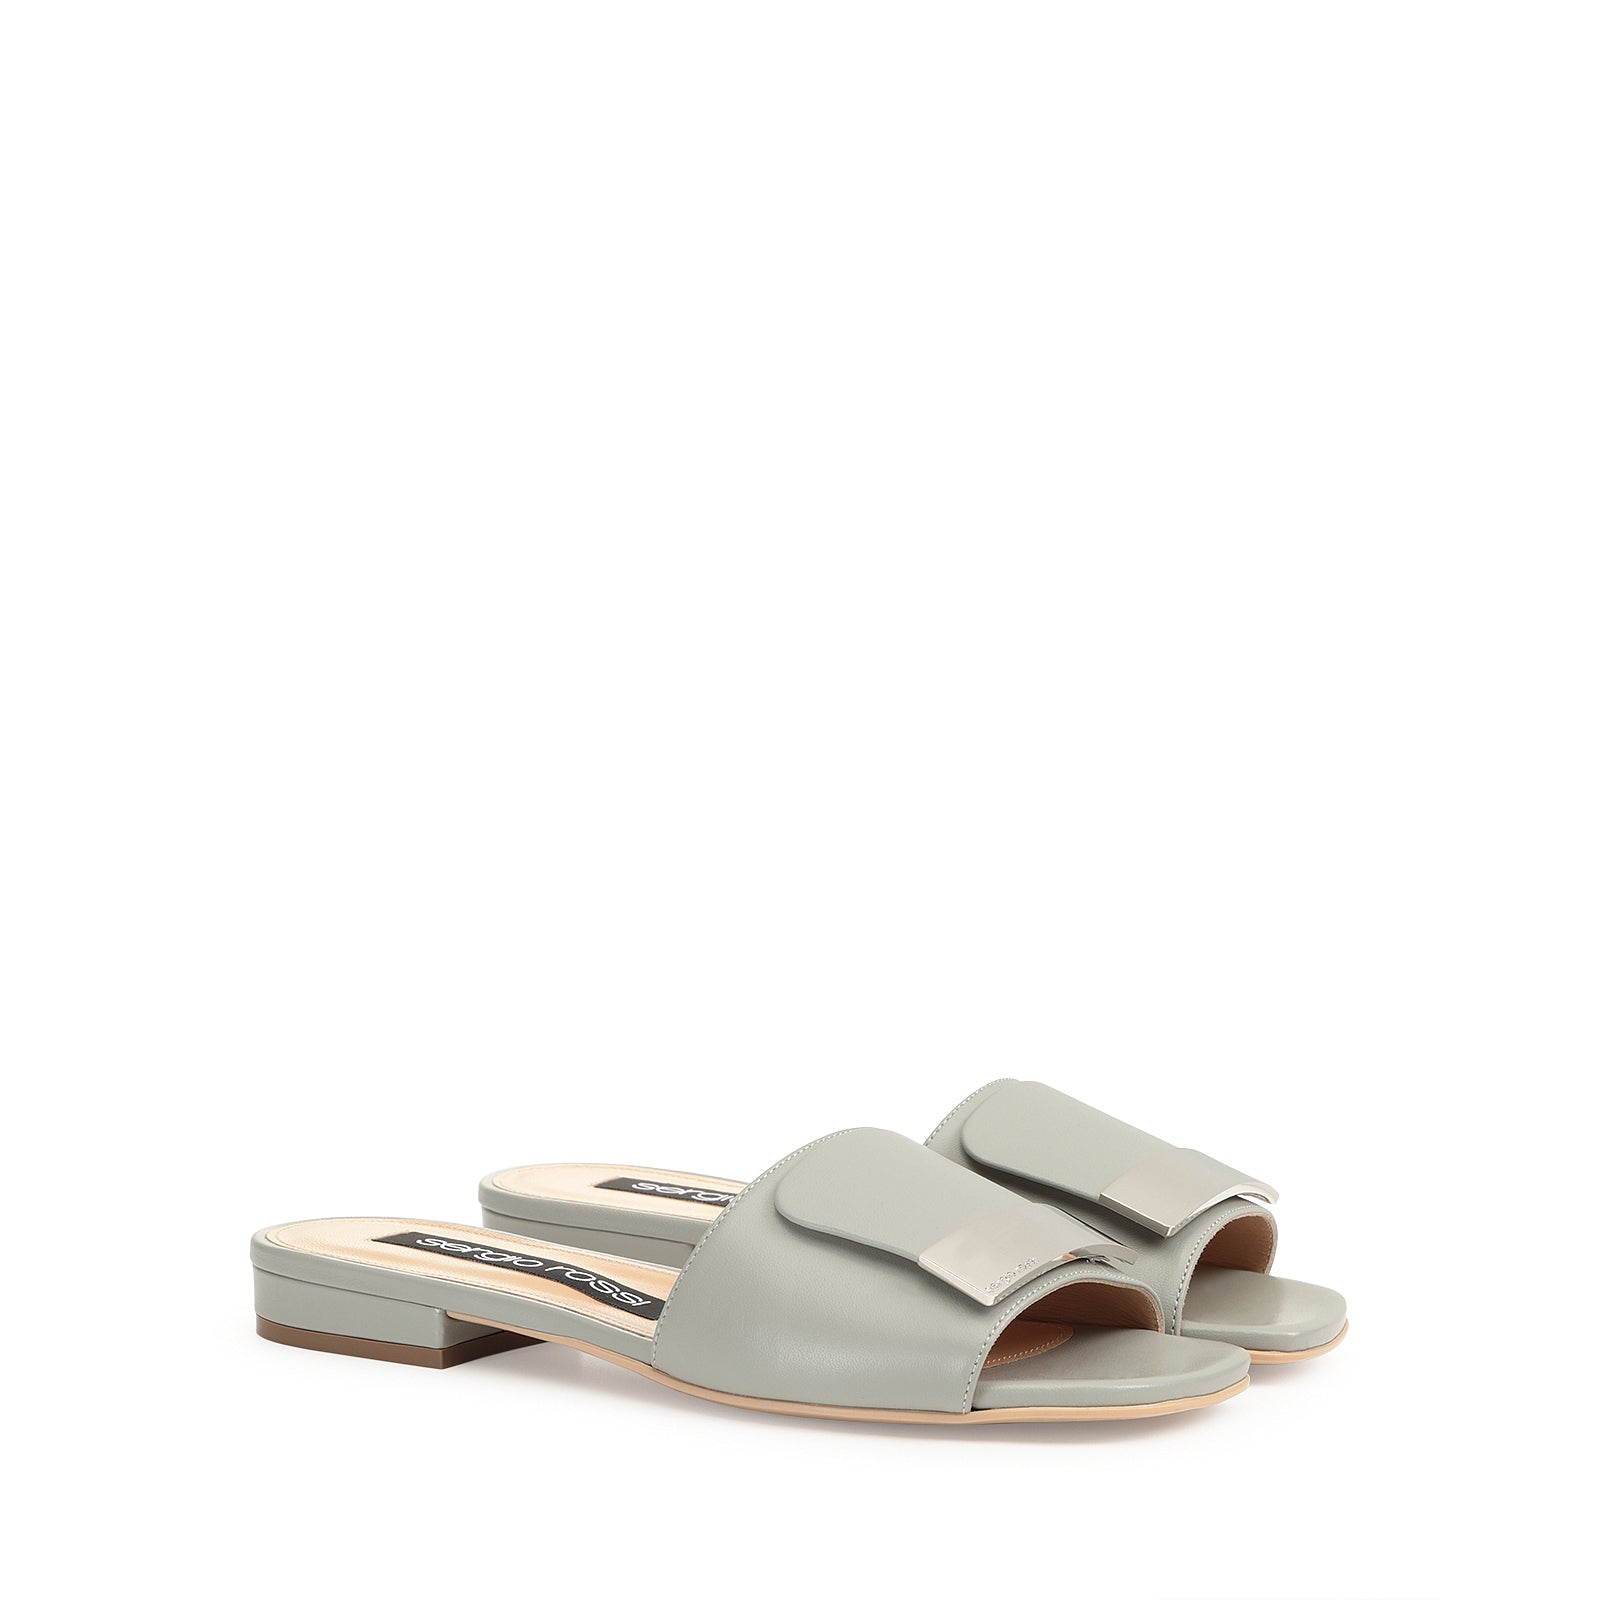 Sr1 flat sandals - Nebbia